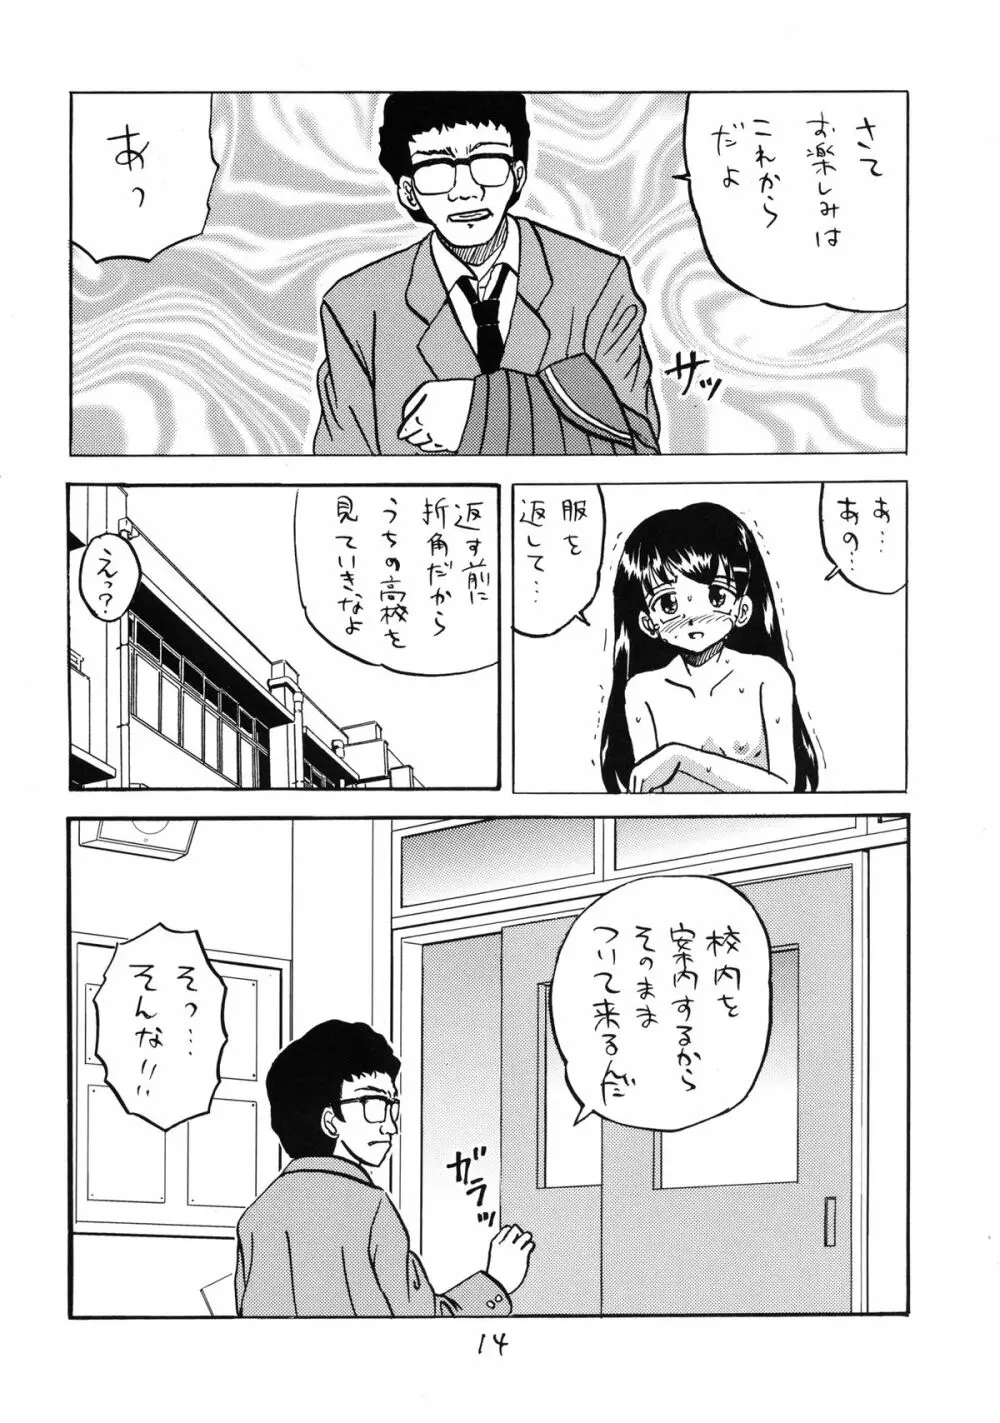 ○ Gakusei Kyousei Roshutsu 3 14ページ